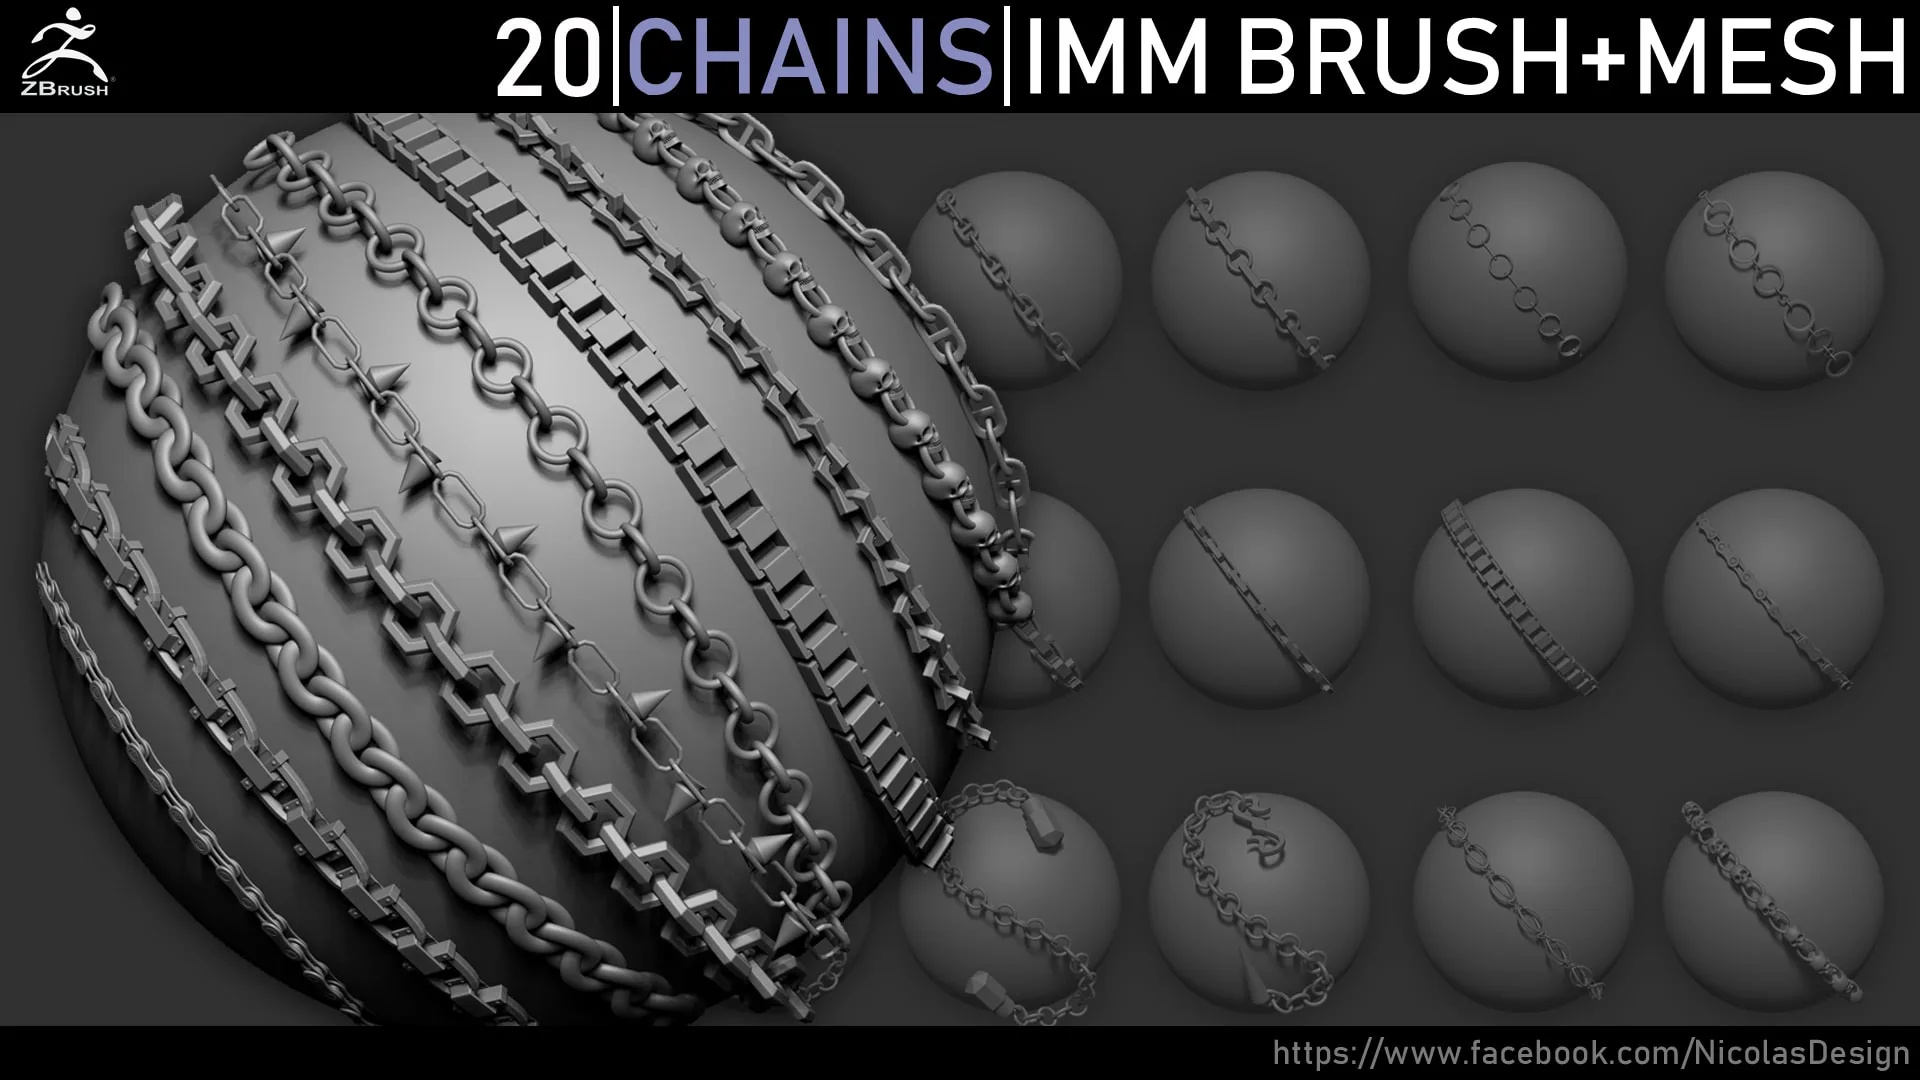 Zbrush - Chains IMM Brush + Meshes